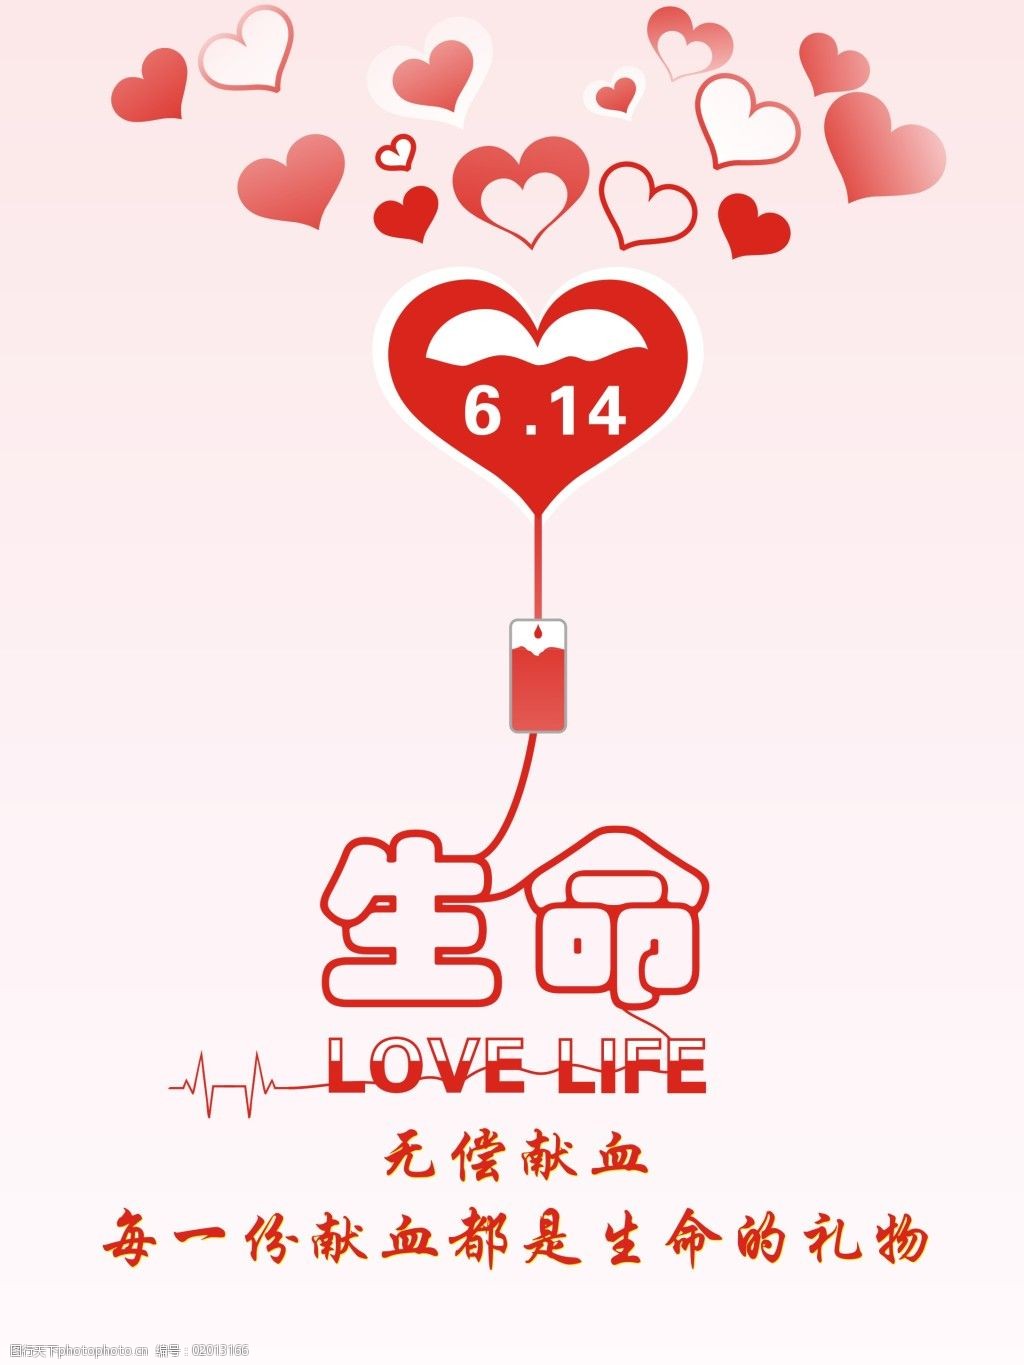 关键词:614无偿献血海报原创设计免费下载 爱心 点滴 生命 滴管 原创